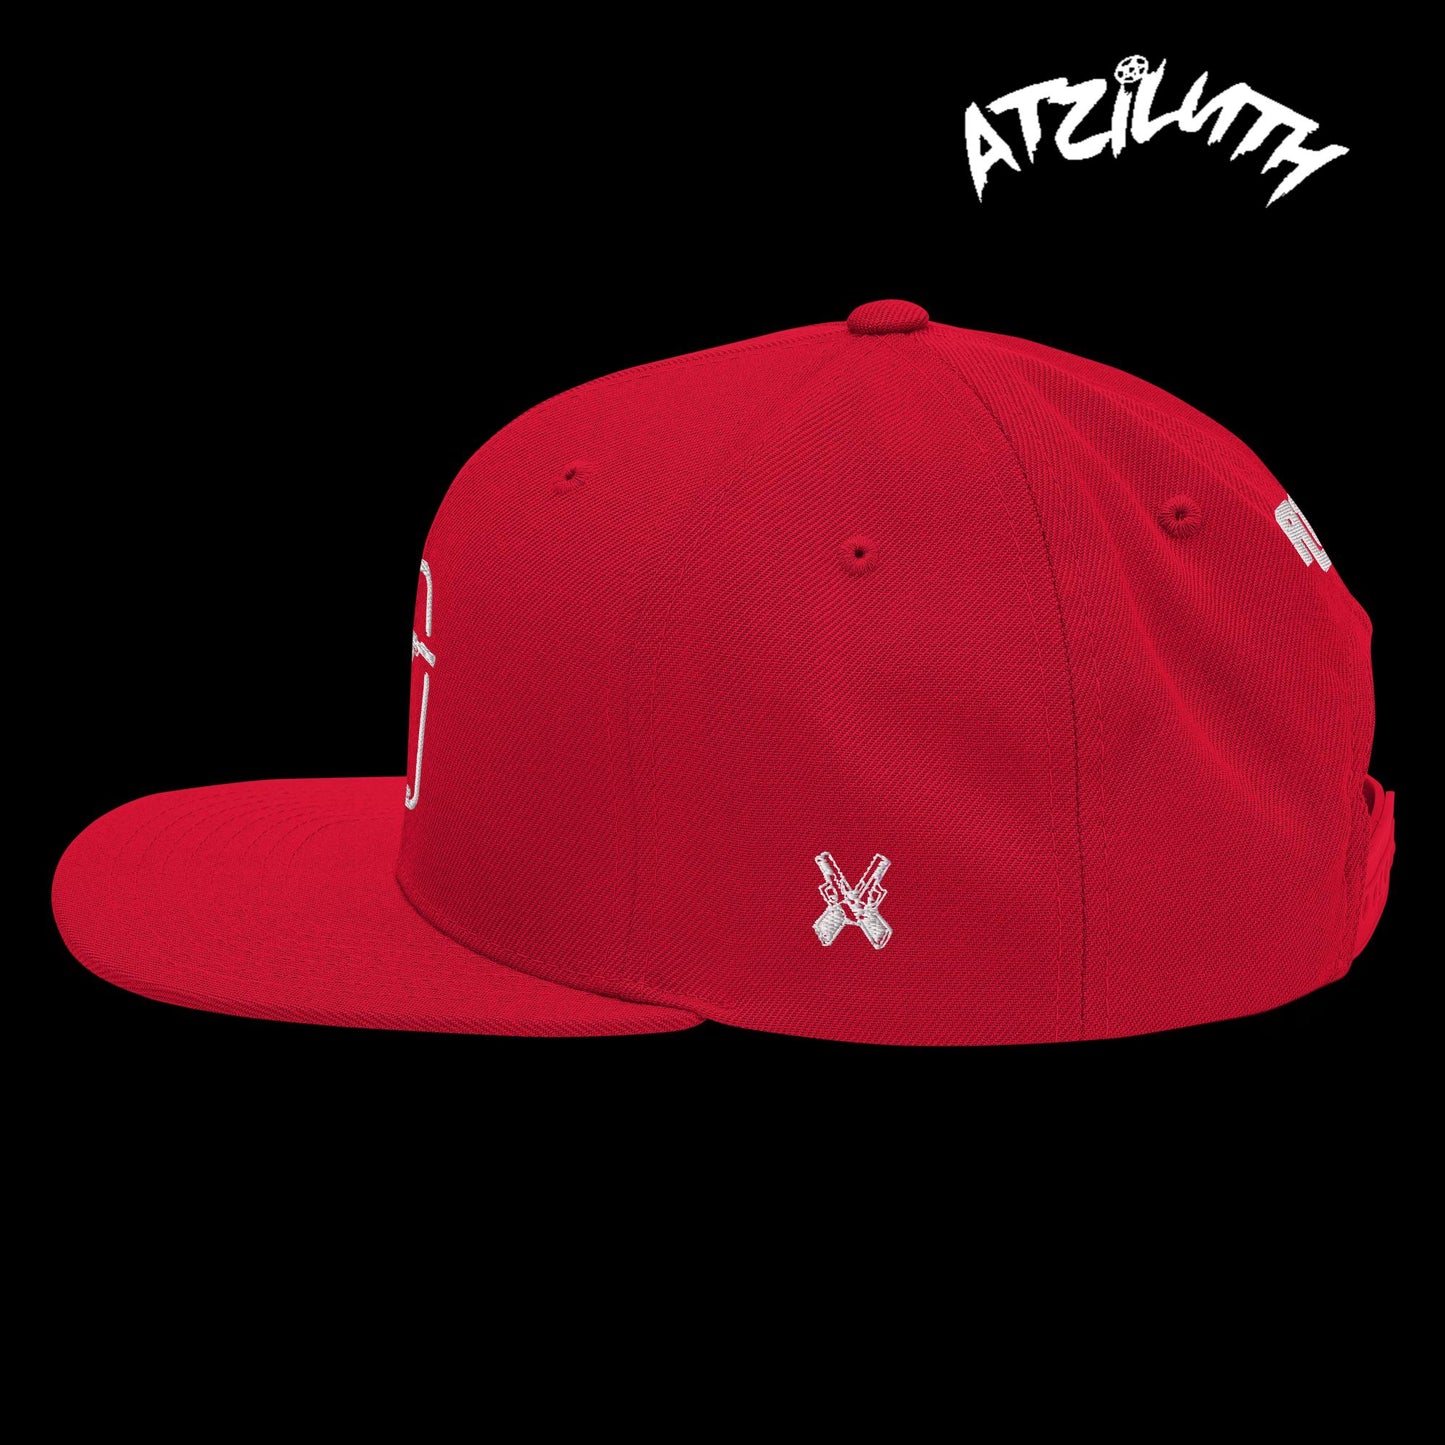 ATZ "Shooters" Snapback Hat